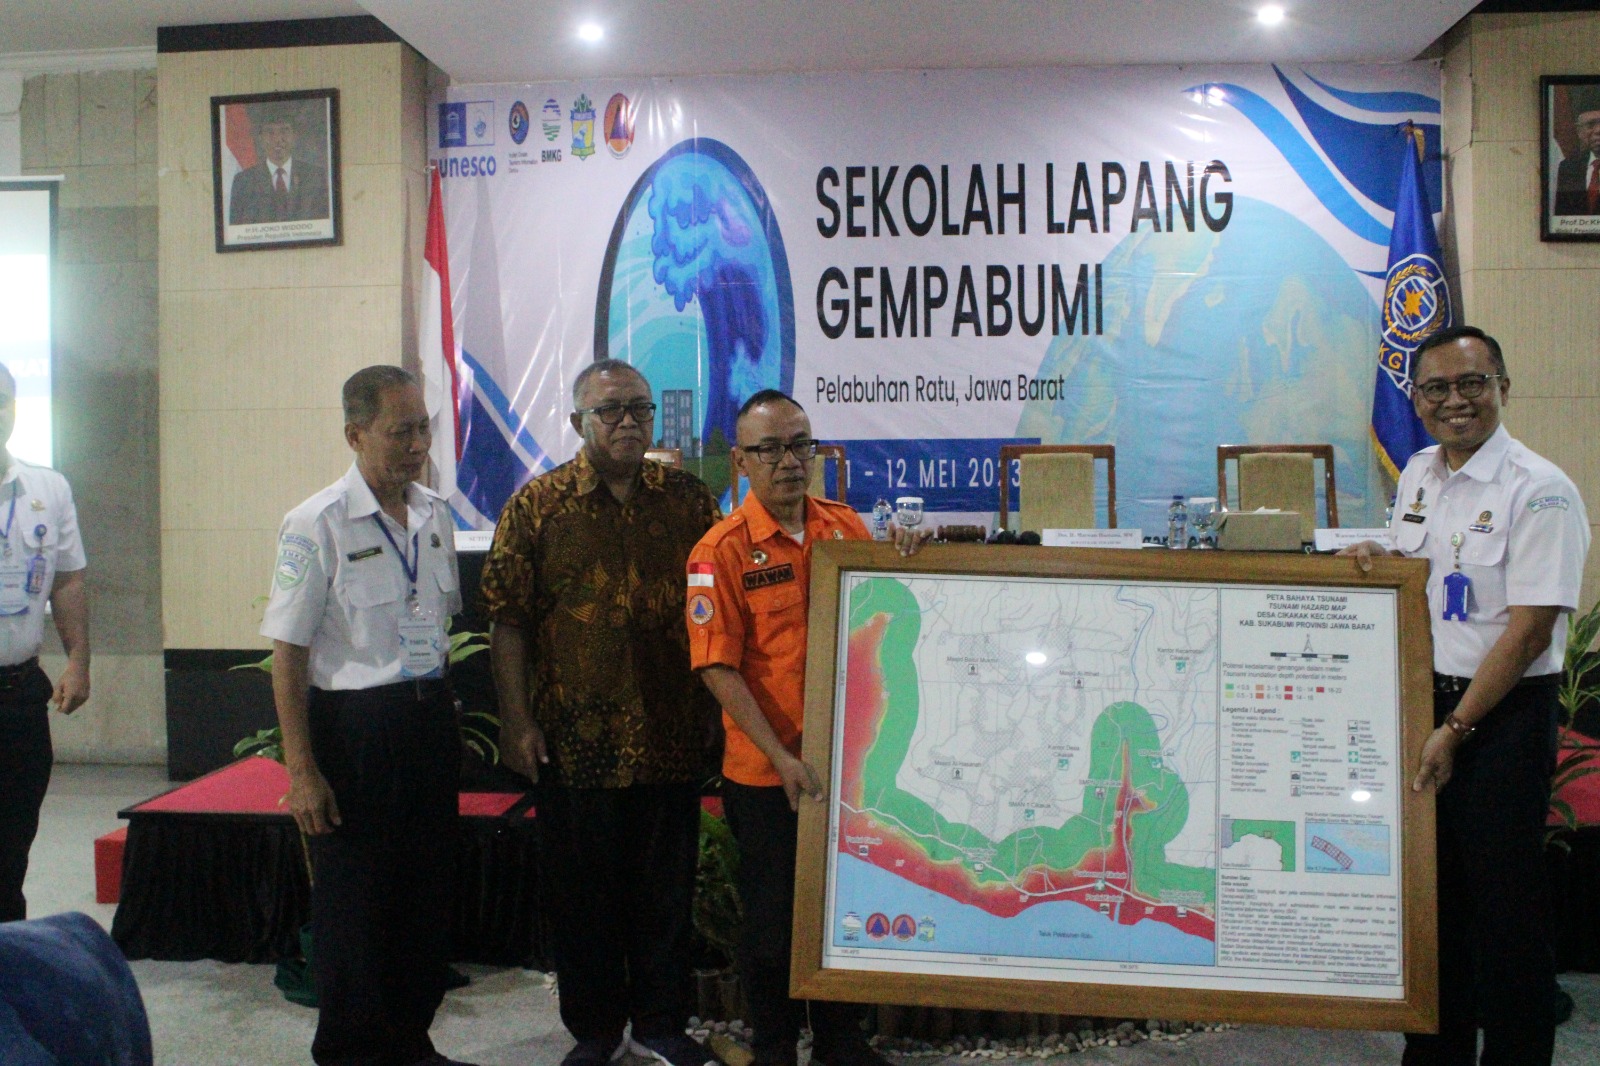 BMKG Wilayah II Tangerang Selatan menyelenggarakan Sekolah Lapang Gempabumi di Hotel Grand Inna Samudra Beach, Palabuhan Ratu, Sukabumi, Kamis-Jum'at (11-12/5). (Ist)